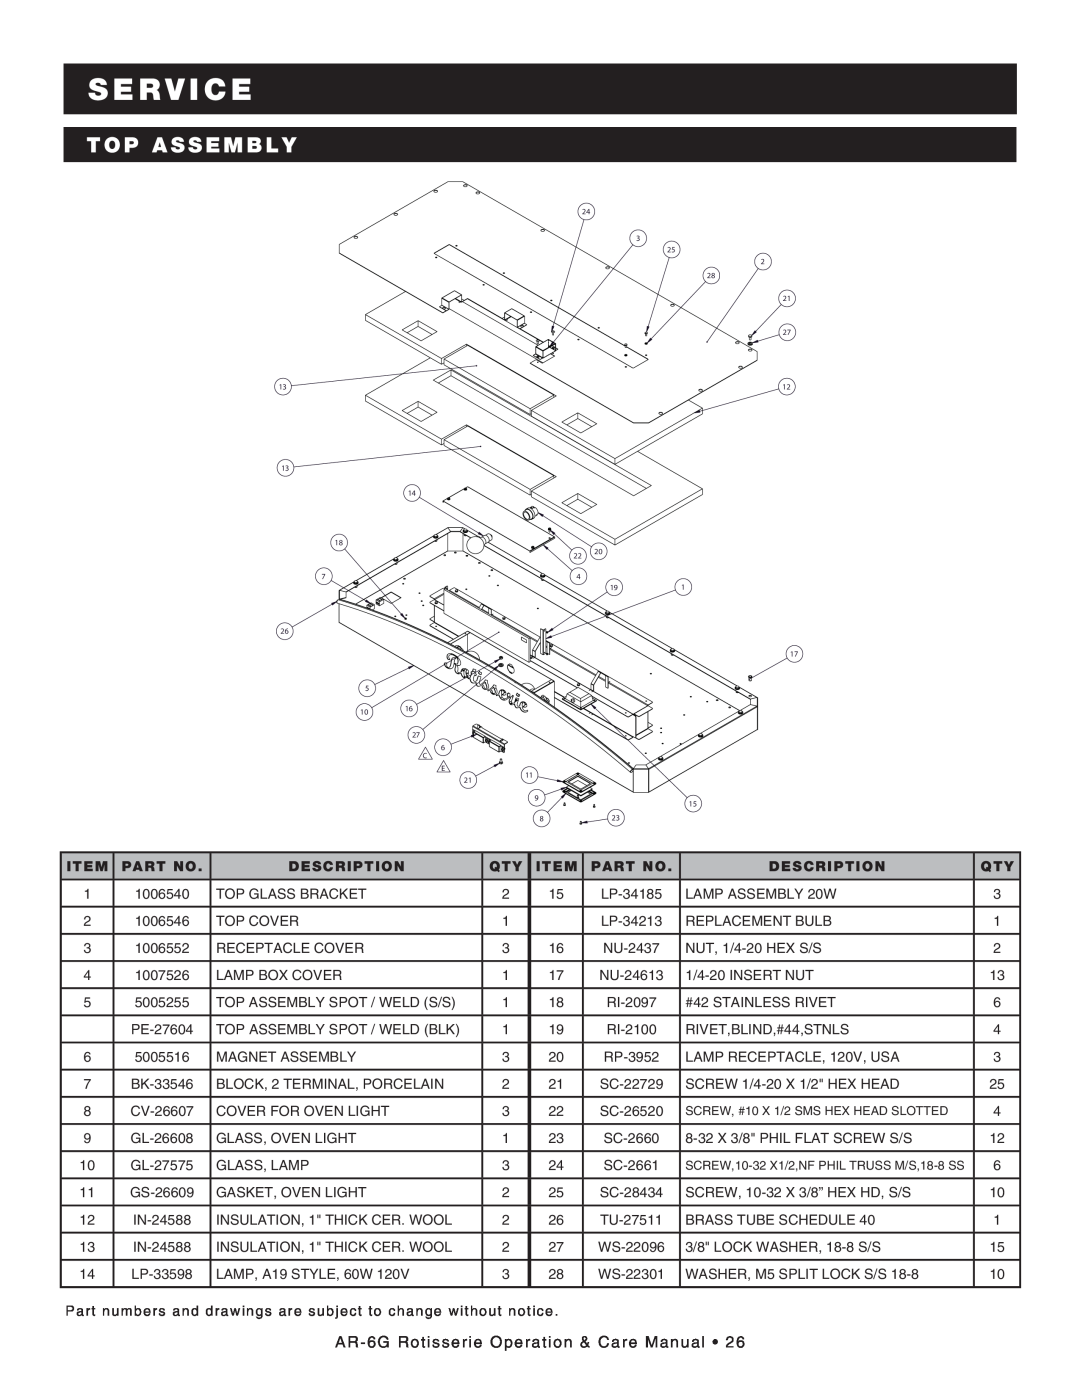 Alto-Shaam manual top assembly, s e rv ic e, AR-6GRotisserie Operation & Care Manual •, Item, PART No, Description 